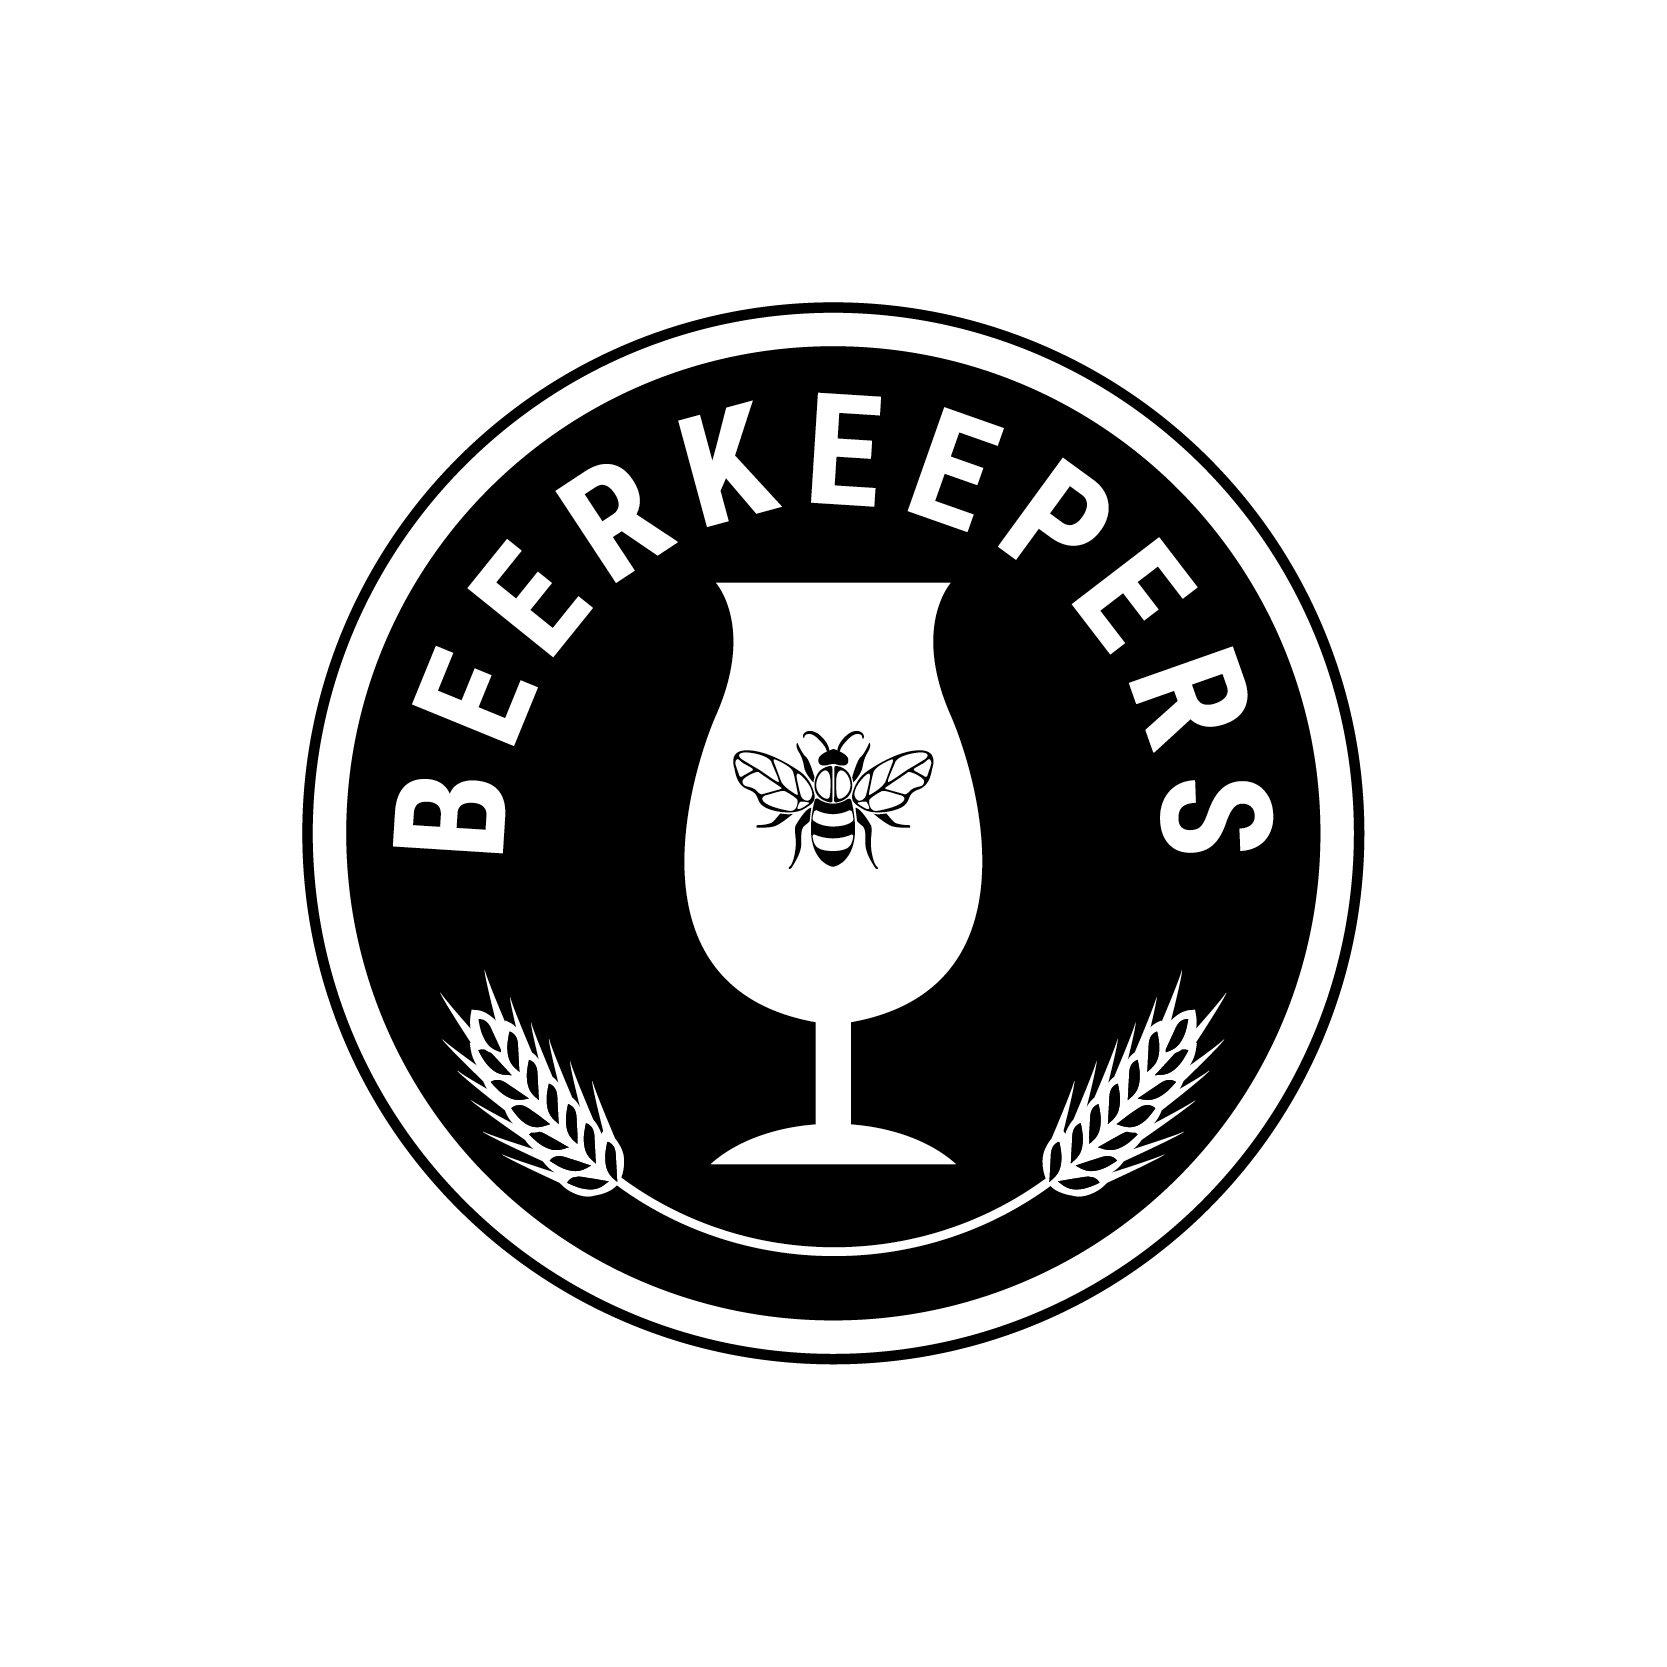 Logo Design for Artisan Beer Maker